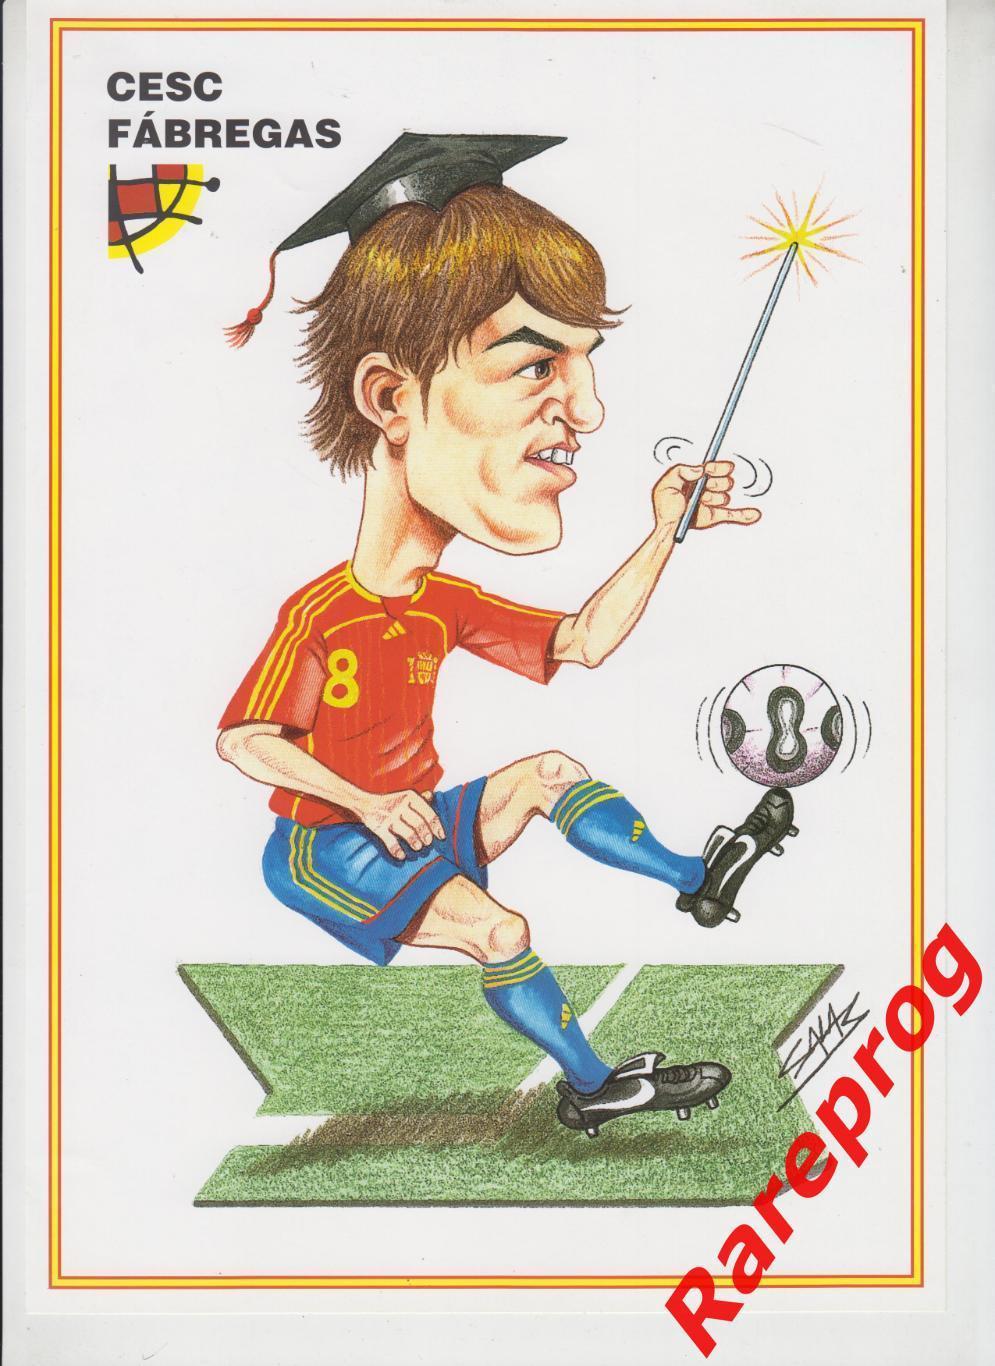 журнал Футбол RFEF Испания № 85 апрель 2006 - постер Эспаньол Cesc Fabregas 2